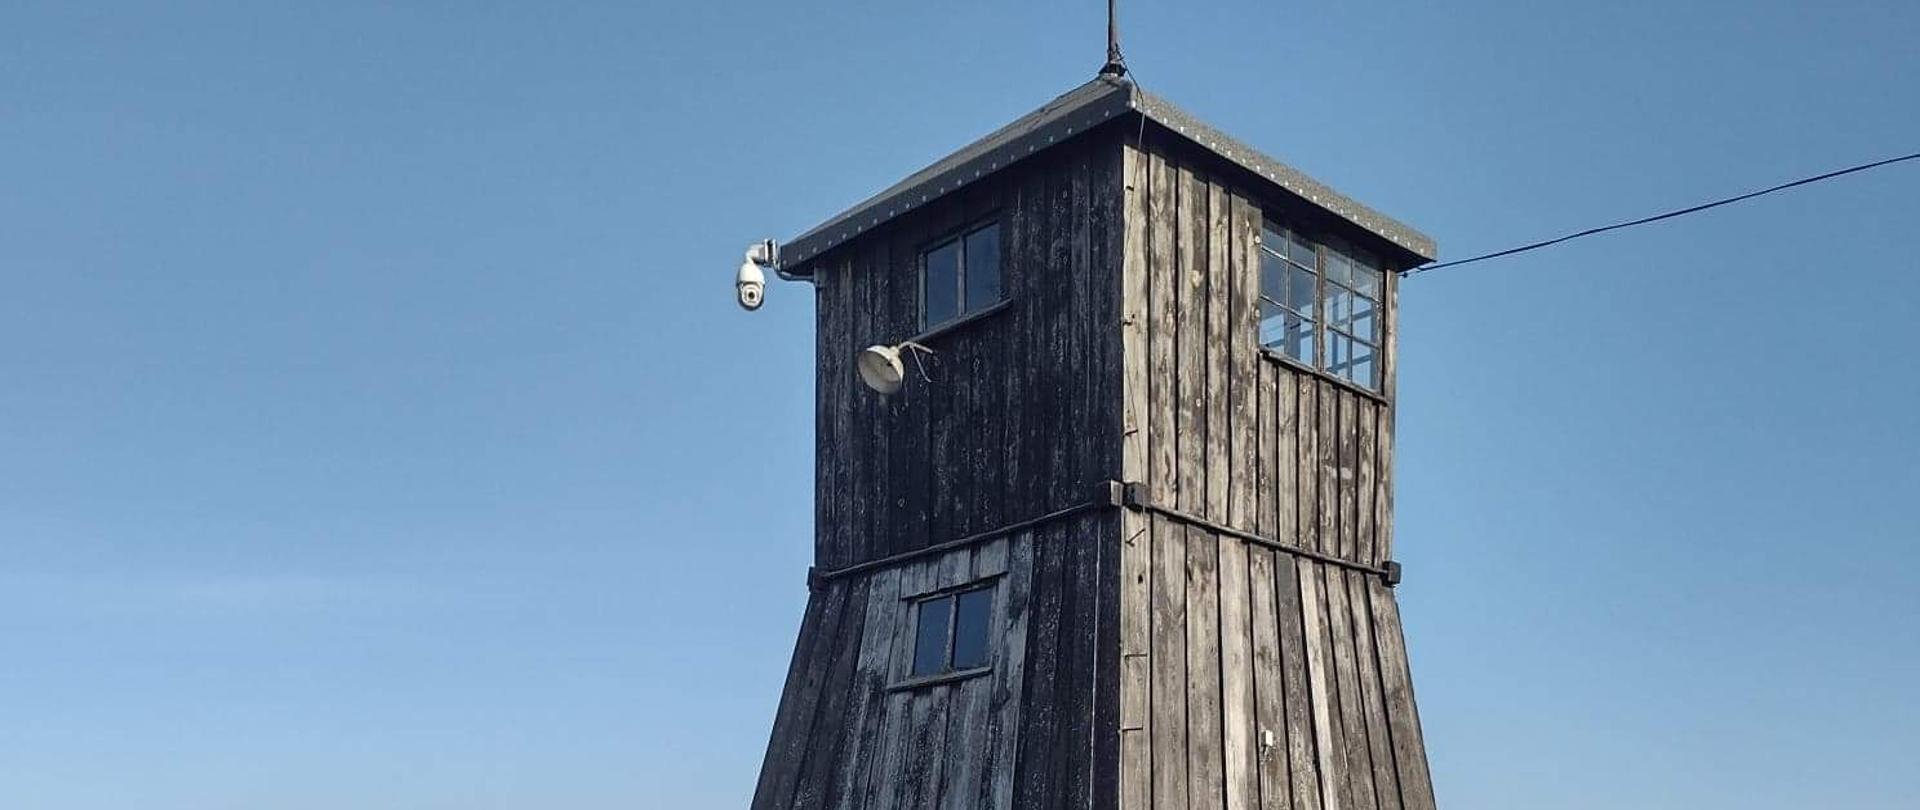 zdjęcie drewnianej wieżyczki strażniczej na tle niebieskiego nieba, muzeum Majdanek